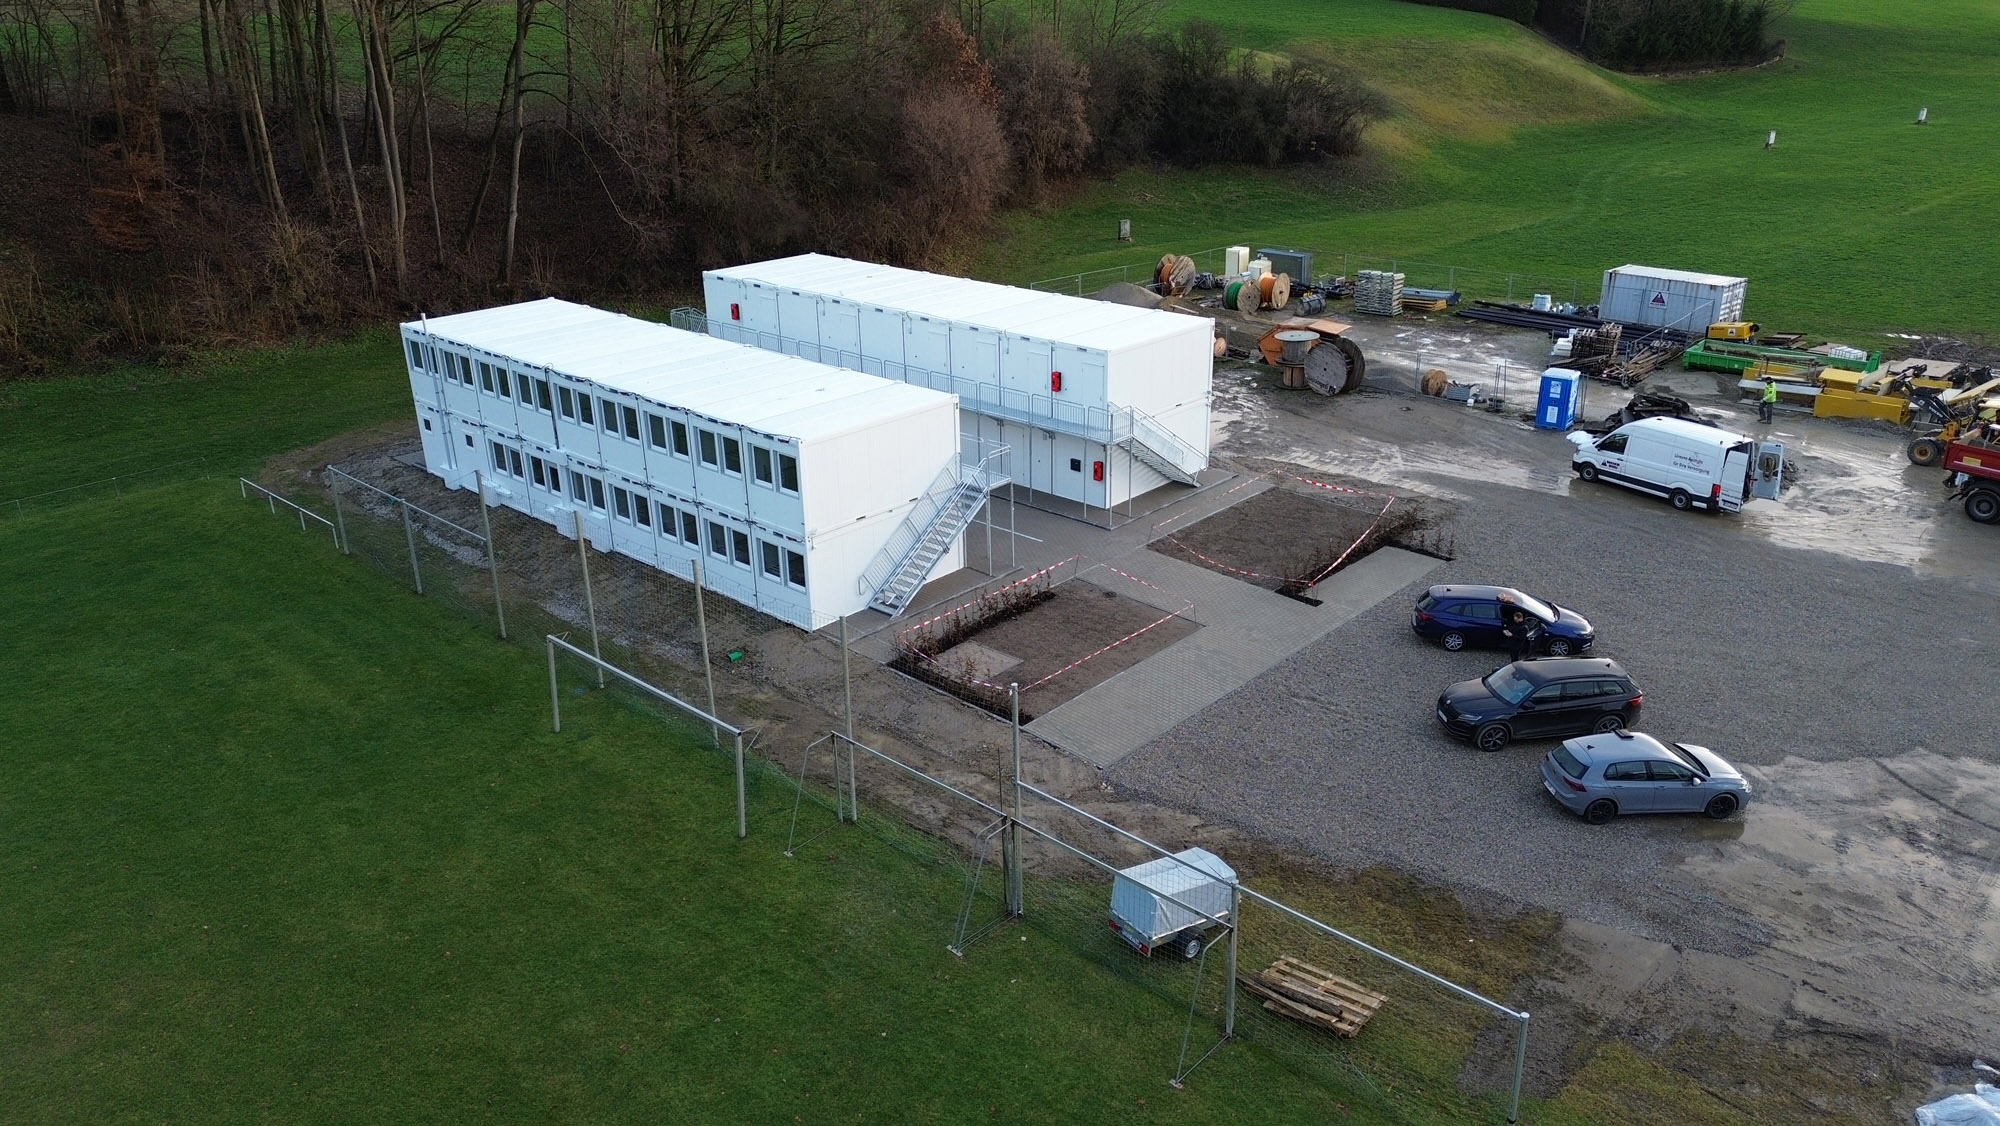 KFB baute Wohnheim für Flüchtlinge in St. Wolfgang in Rekordzeit - Aussenanlagen